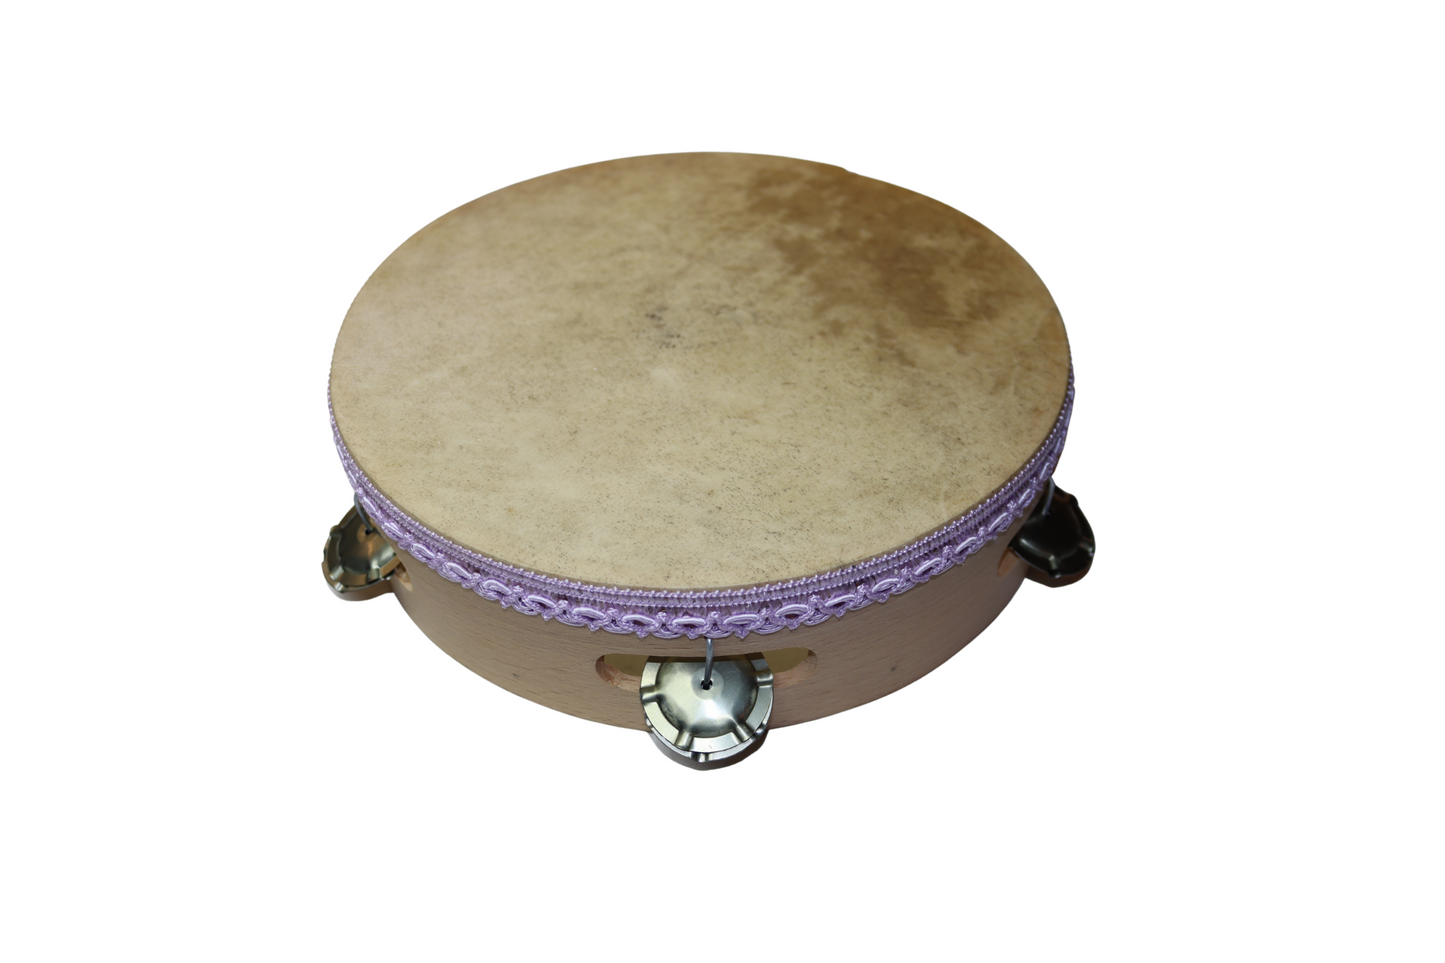 Tamburello per la tarantella , strumento a percussione di forma circolare, tipico della tradizione musicale popolare della Calabria.